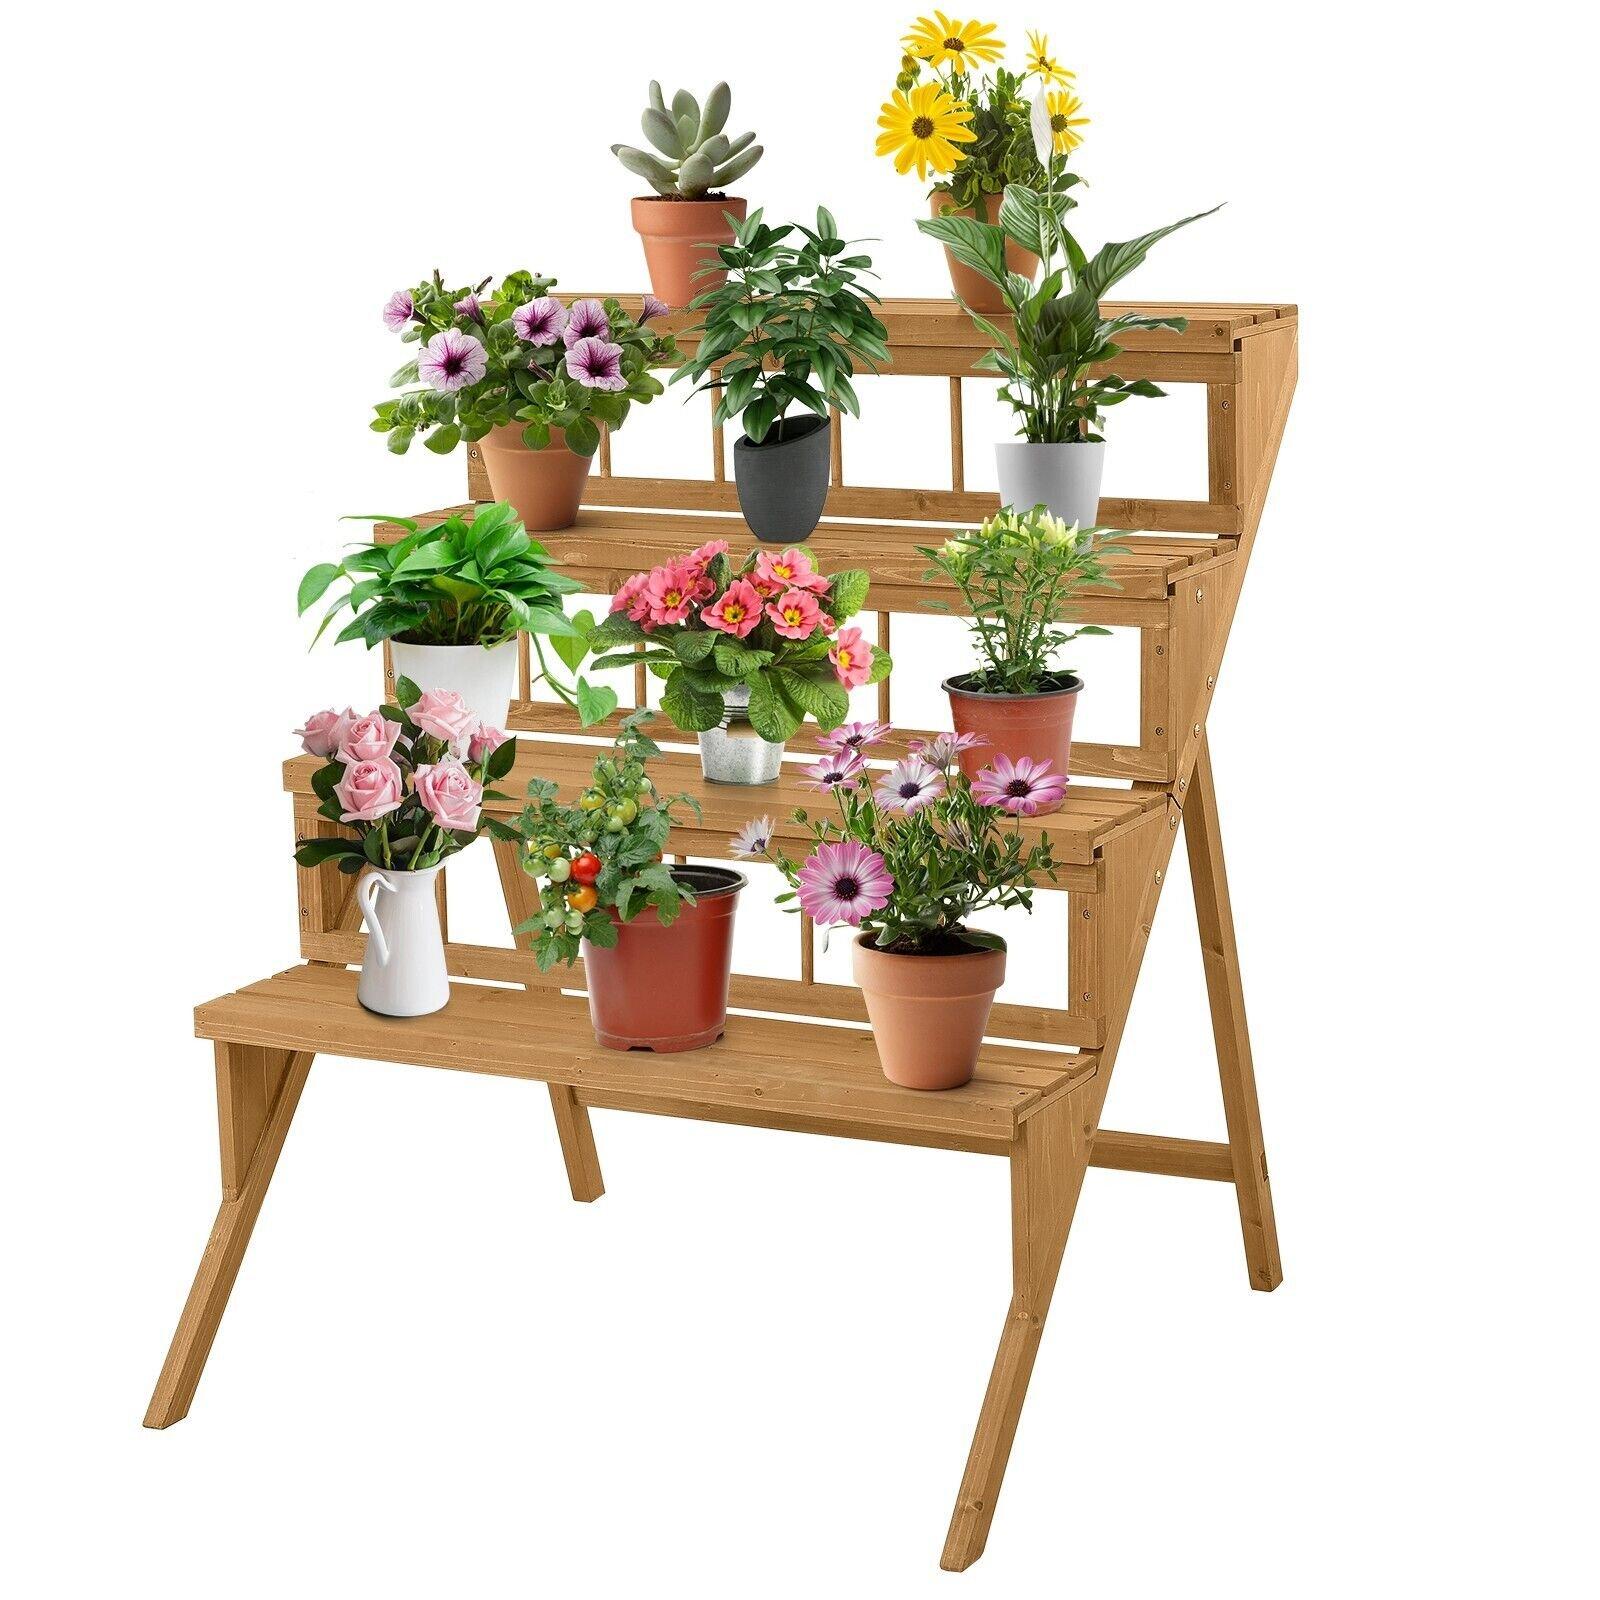 4-Tier Wooden Plant Stand Ladder Flower Pot Display Shelf Rack Holder Organizer